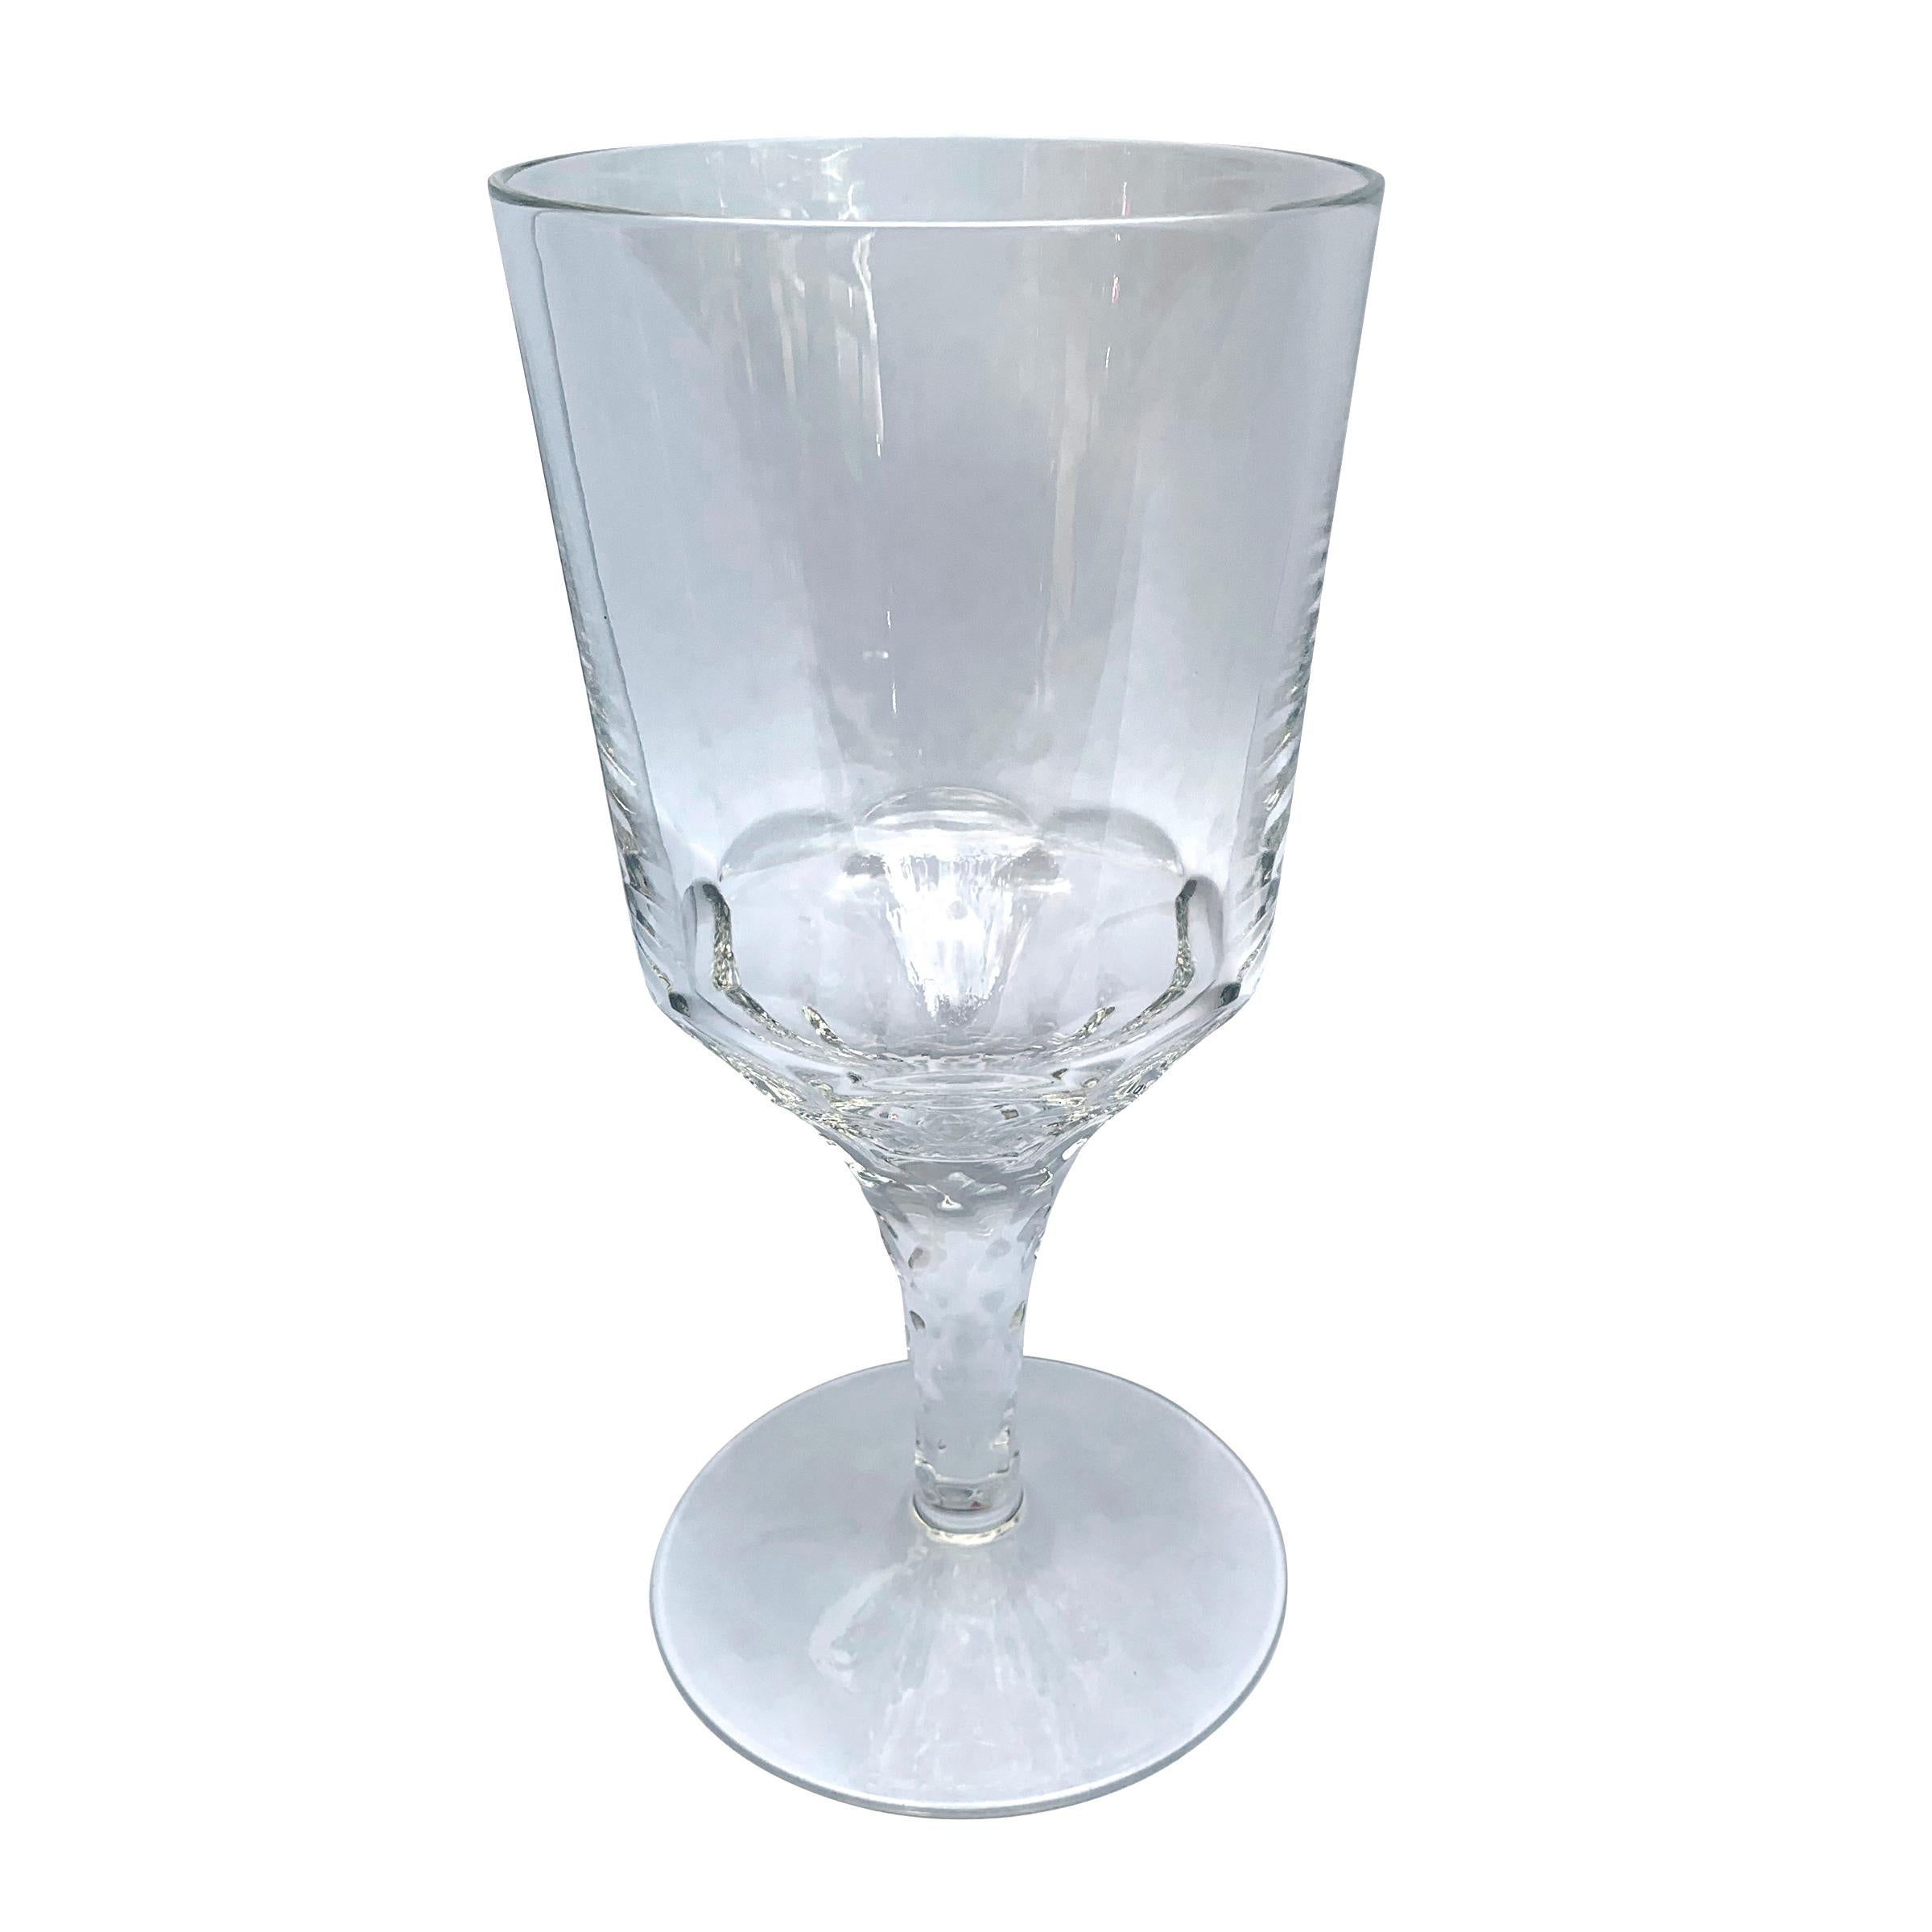 Un fantastique ensemble de huit verres à vin en cristal soufflé à la main, inspirés des gobelets à vin géorgiens du 18e siècle, chacun avec une tige à facettes.